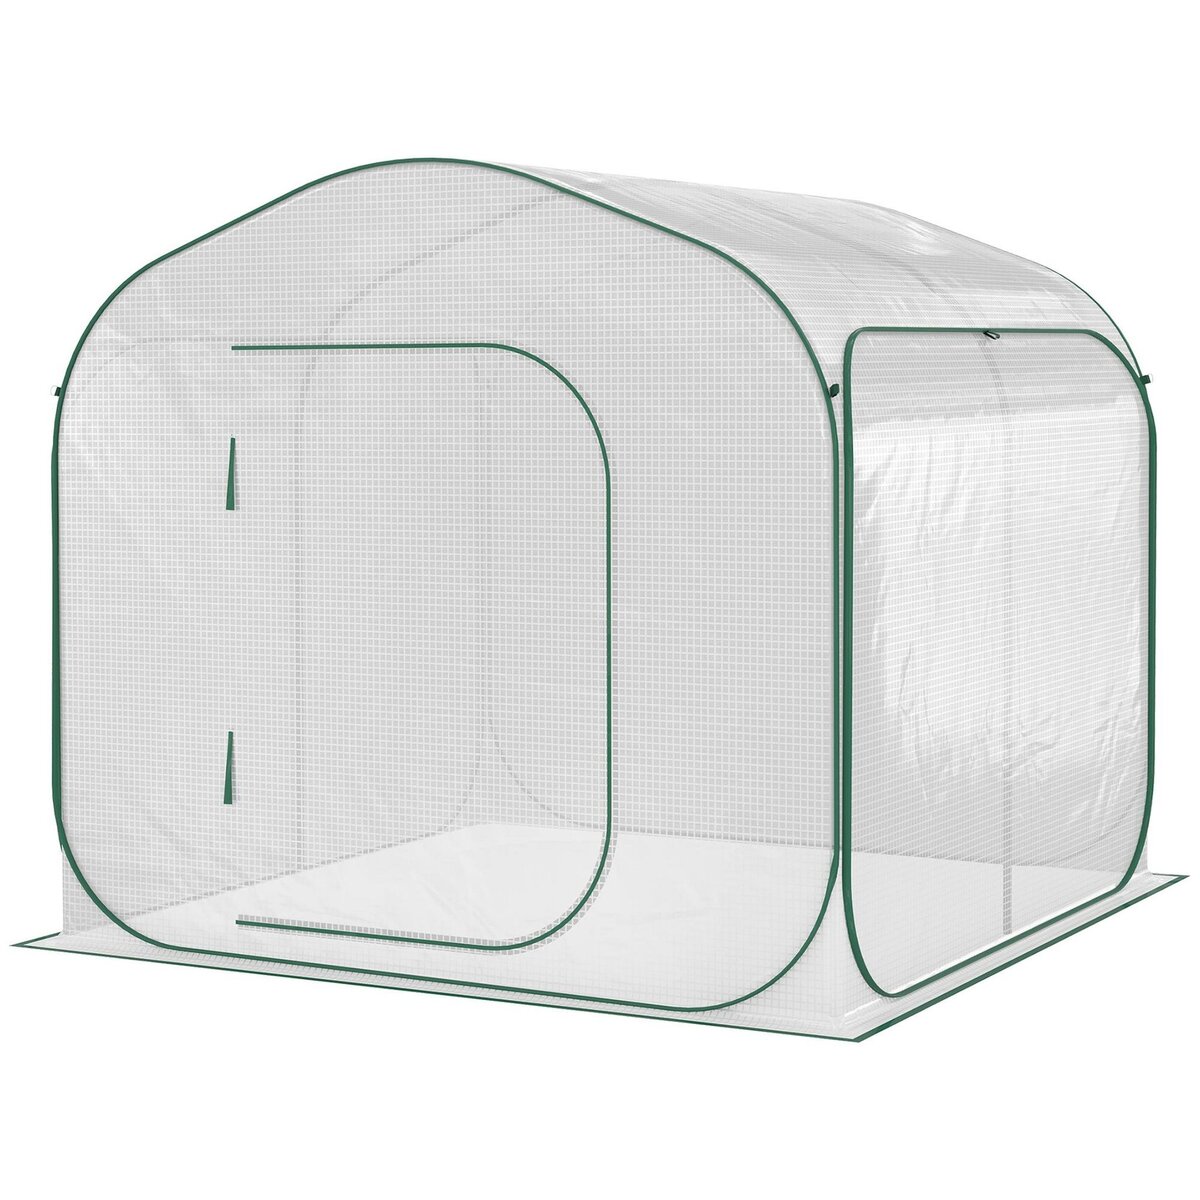 OUTSUNNY Serre pop-up - serre de jardin pop-up - porte zippée enroulable - dim. 2,08L x 2,08l x 1,95H m - sac transport inclus - PE blanc vert